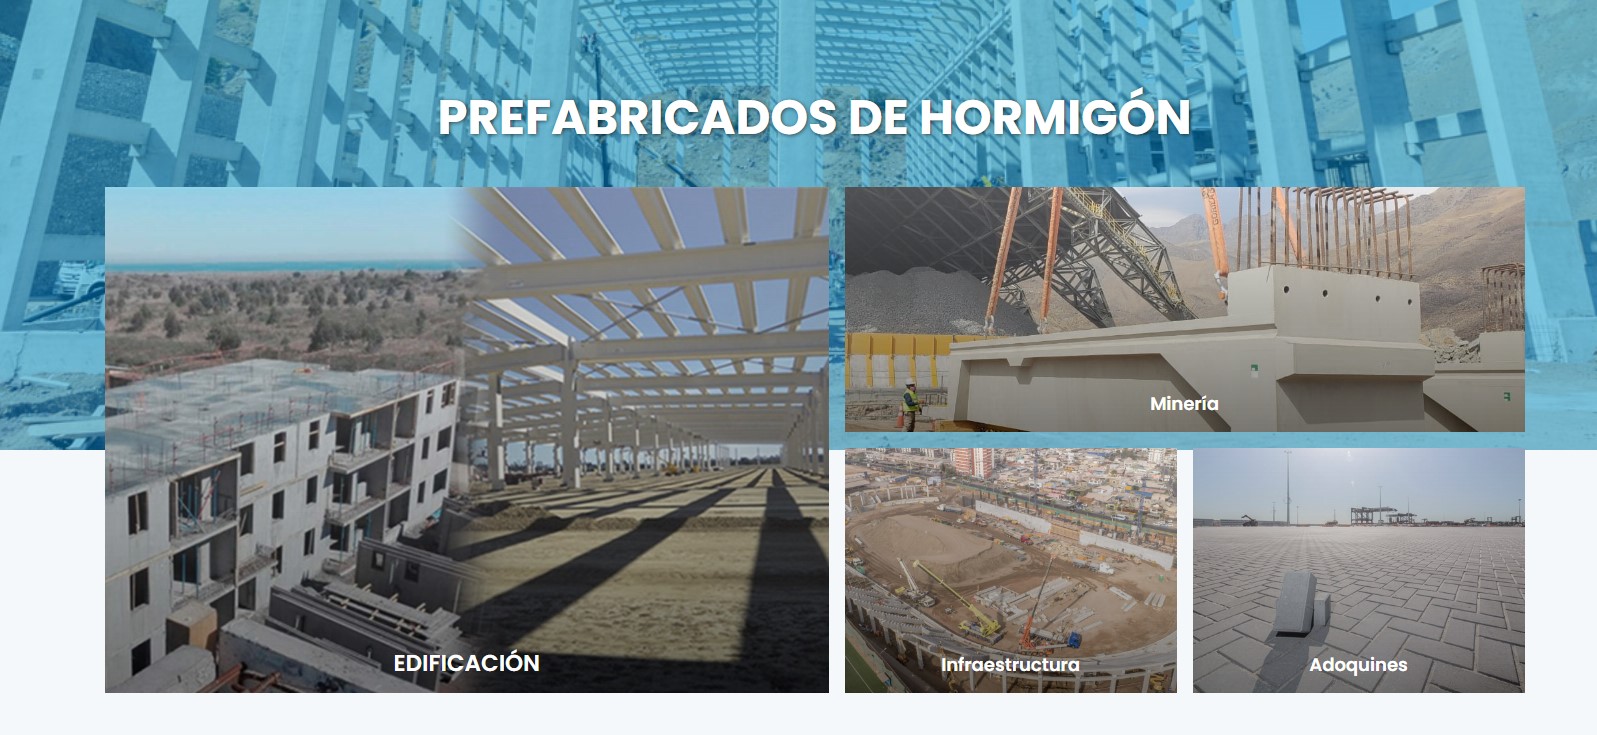 ICH presenta renovado sitio de prefabricados de hormigón